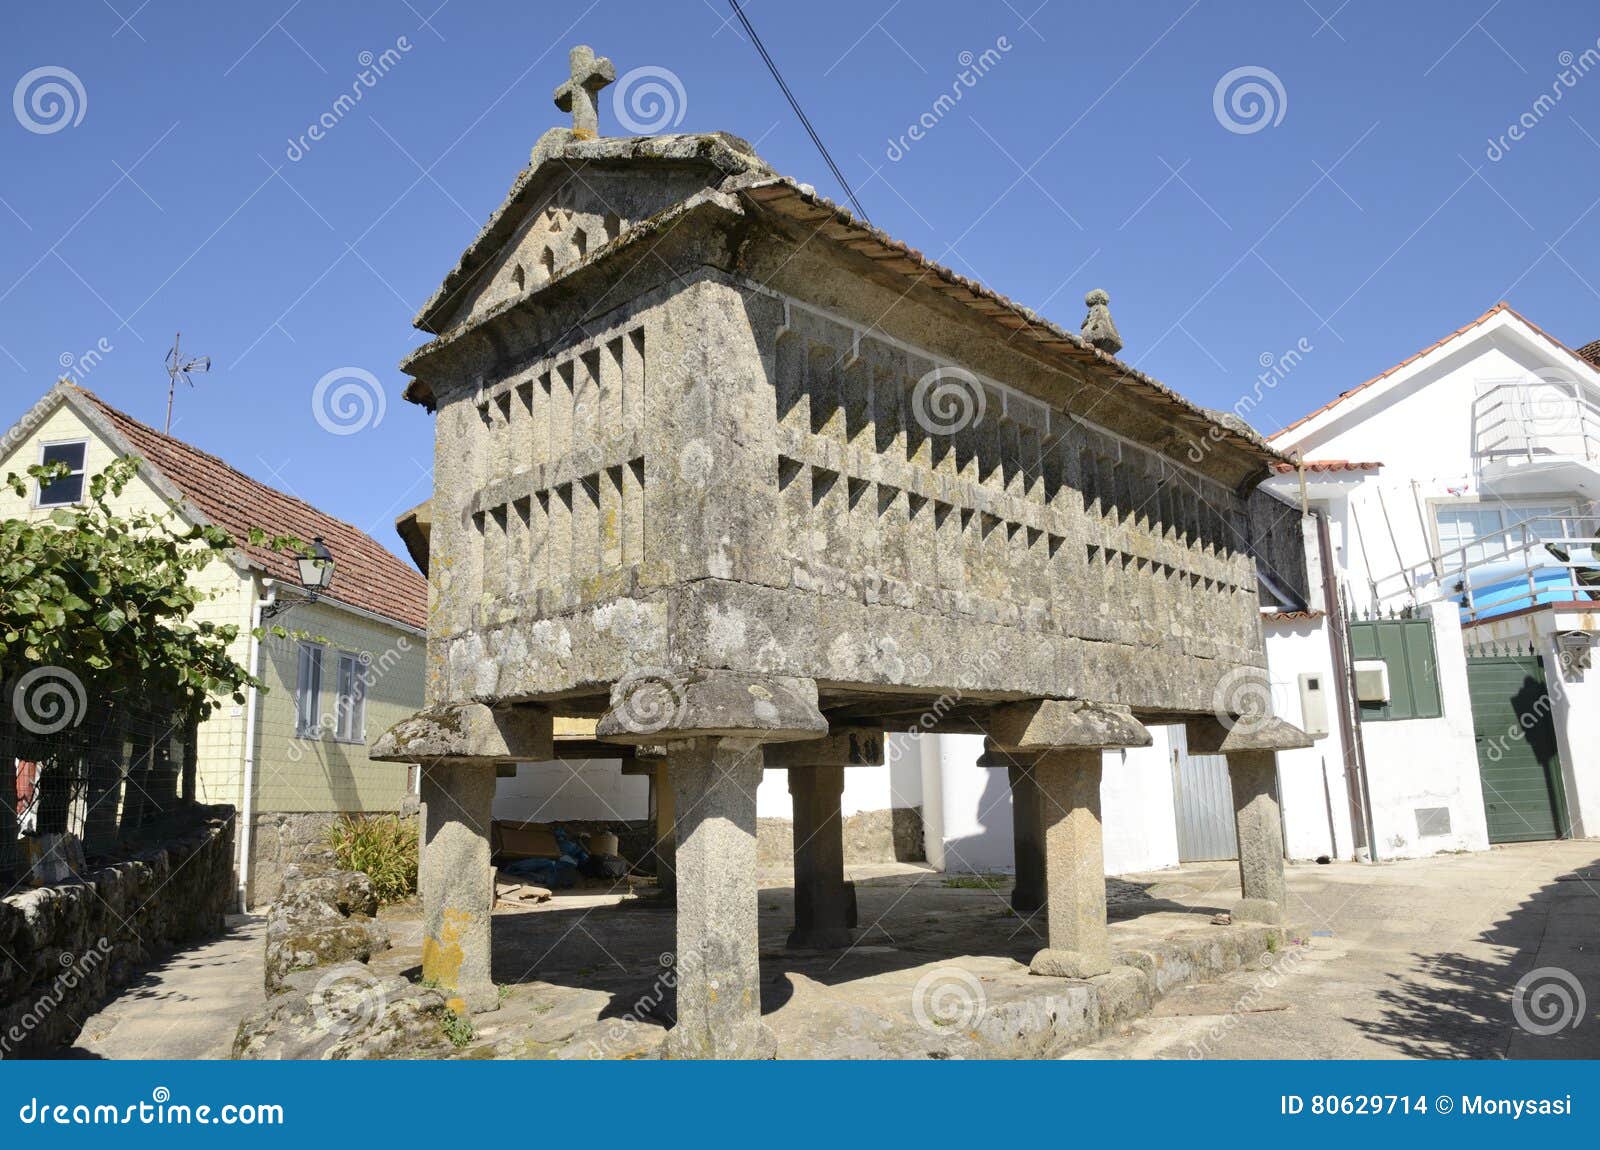 horreo, a galician granary